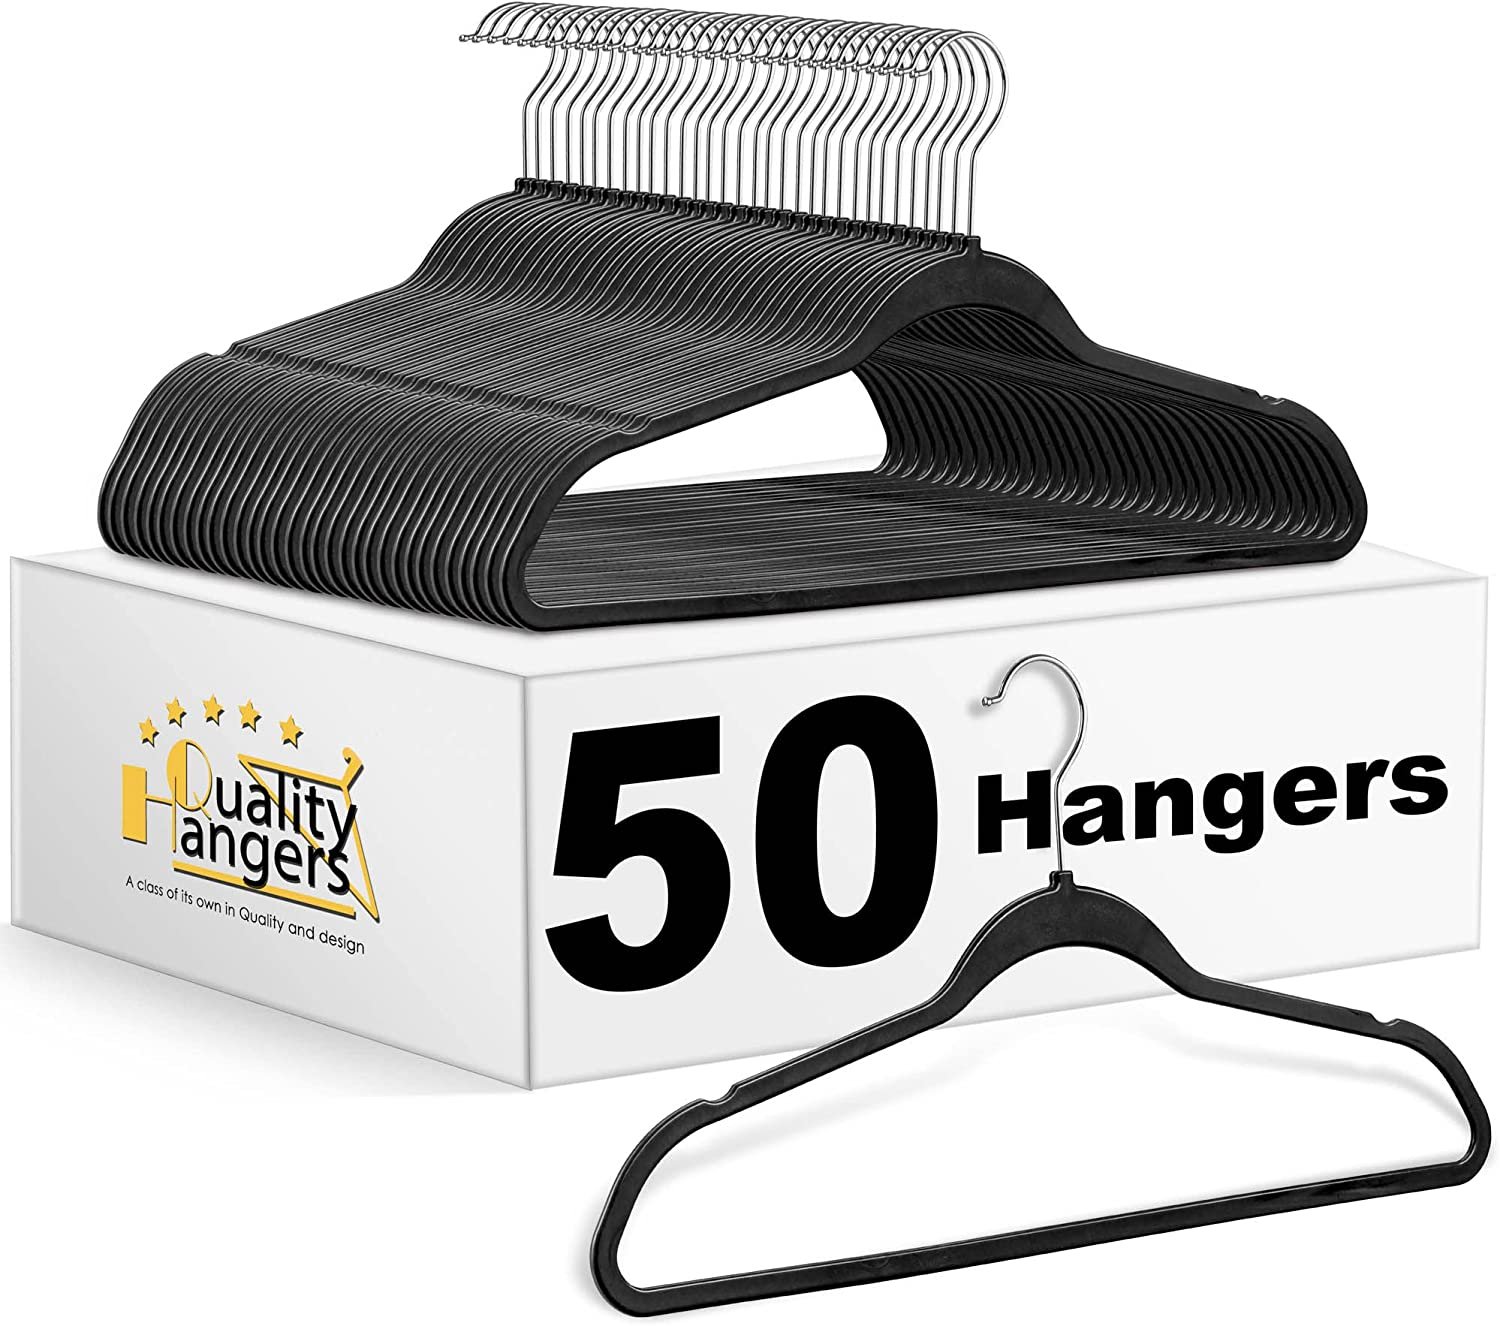 Heavy duty non-velvet slim plastic hangers